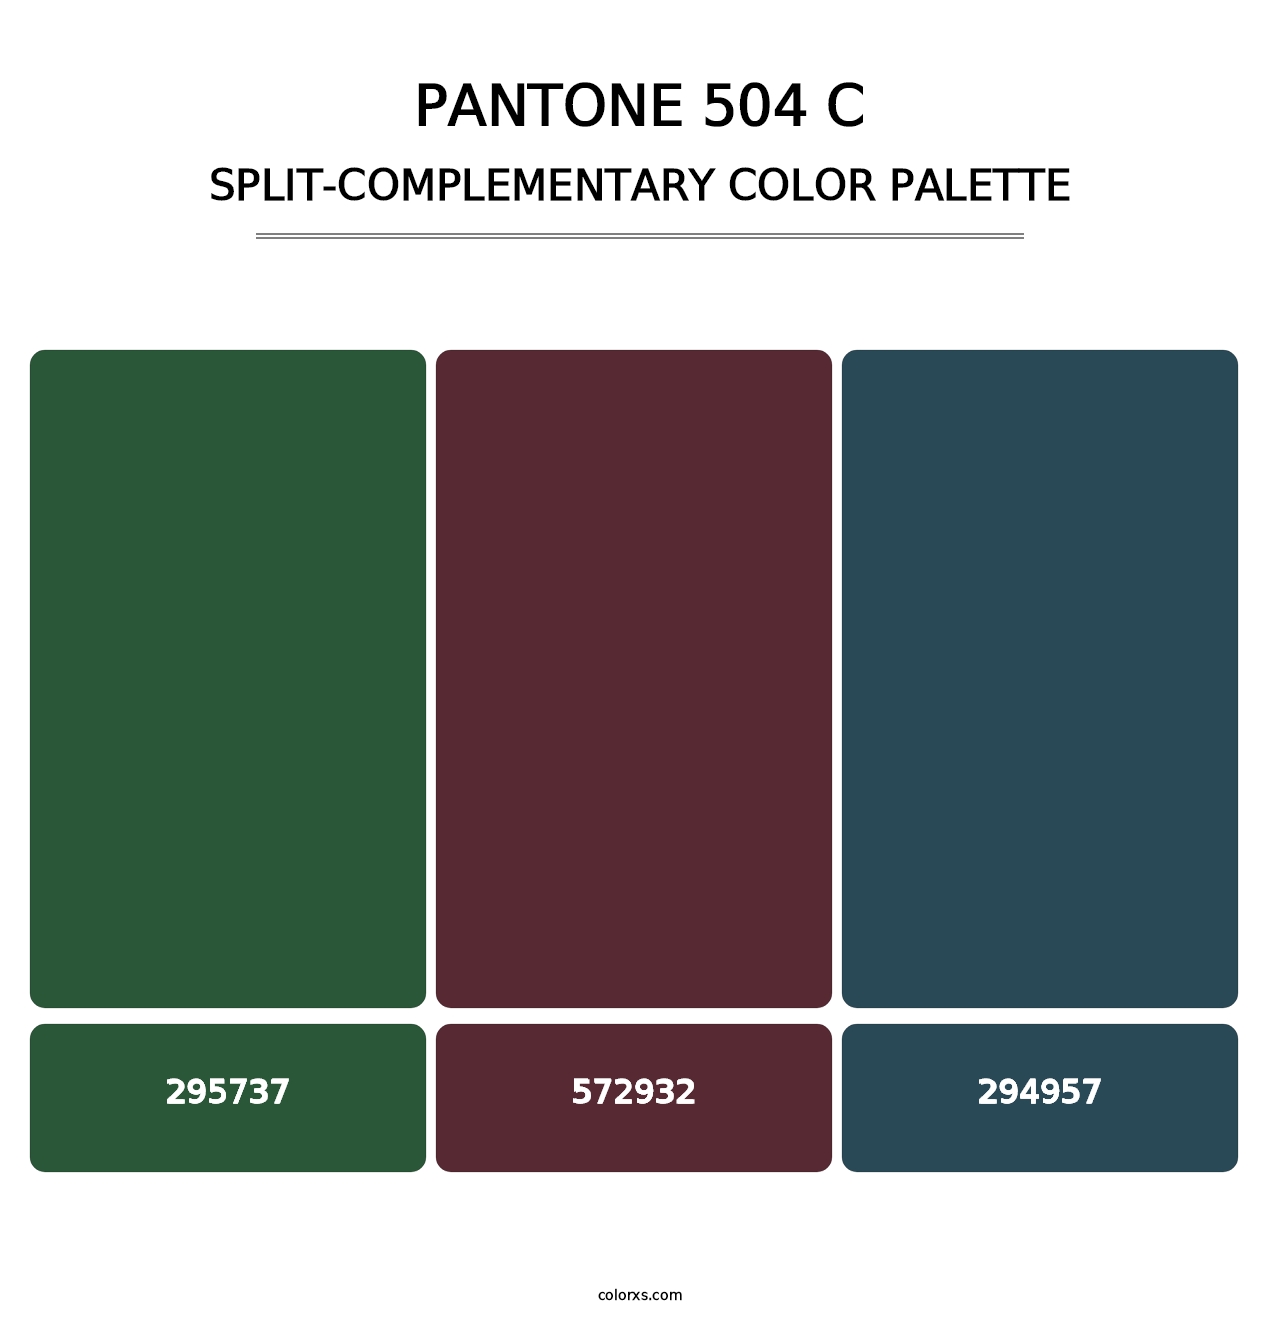 PANTONE 504 C - Split-Complementary Color Palette